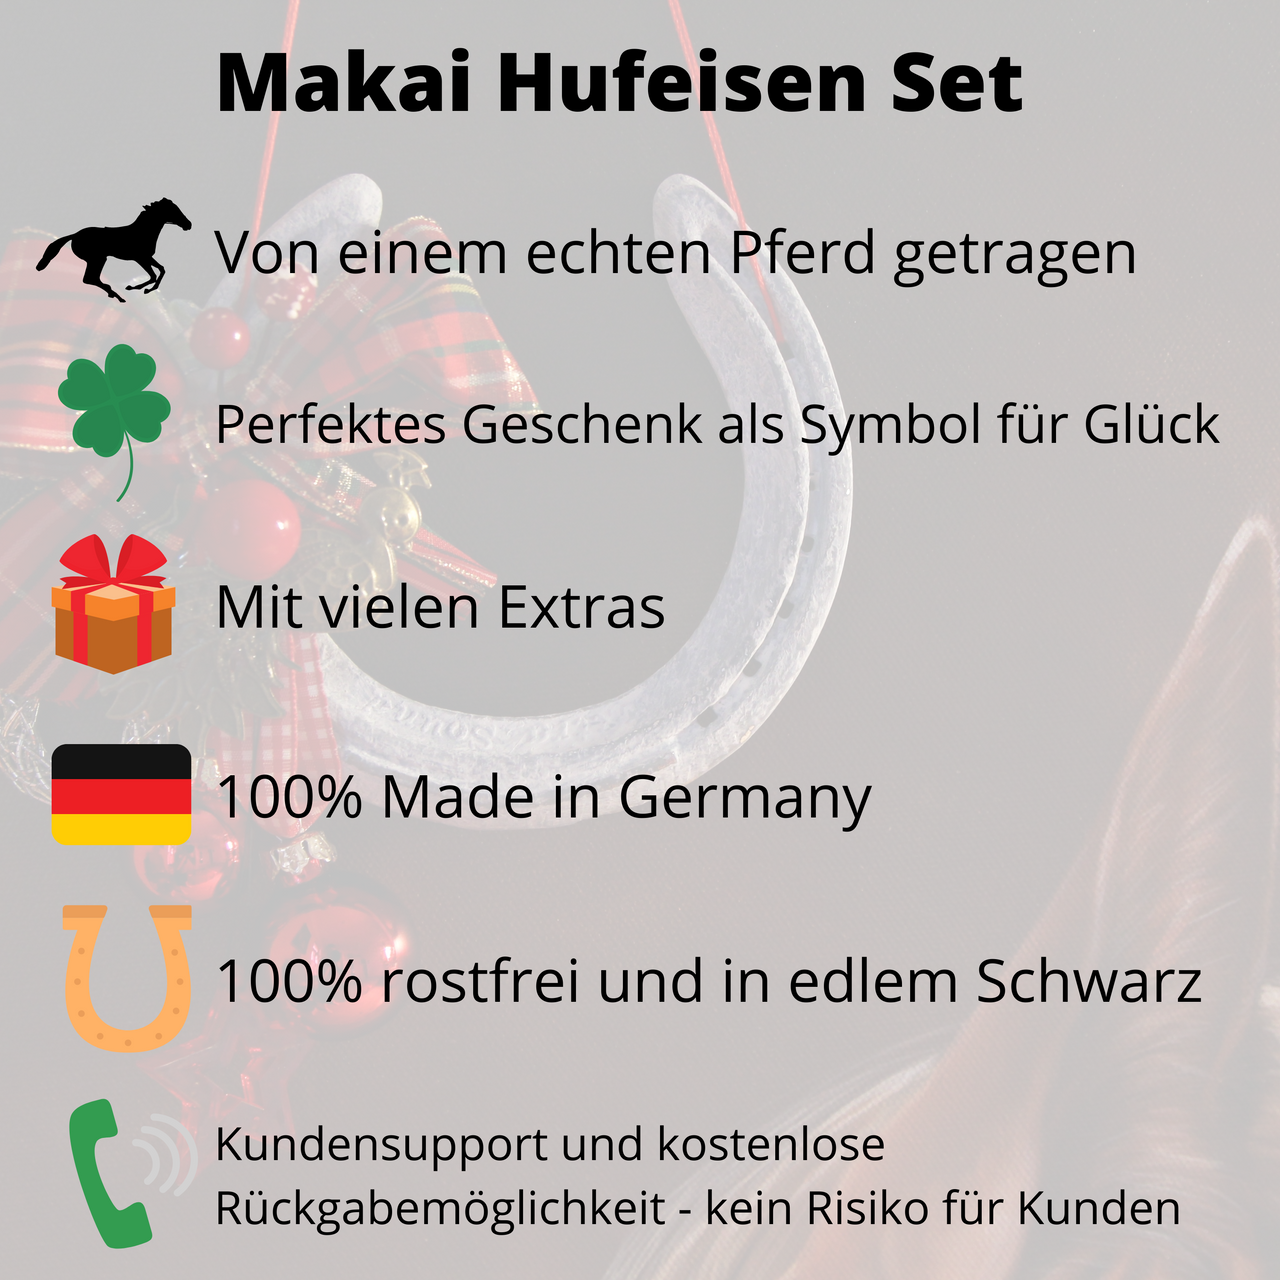 Makai Hufeisen Set: von einem echten Pferd getragen, perfektes Geschenk als Symbol für Glück, mit vielen Extras, 100% Made in Germany, 100% rostfrei und in edlem Schwarz, Kundensupport deutsch und kostenlose Rückgabemöglichkeit.